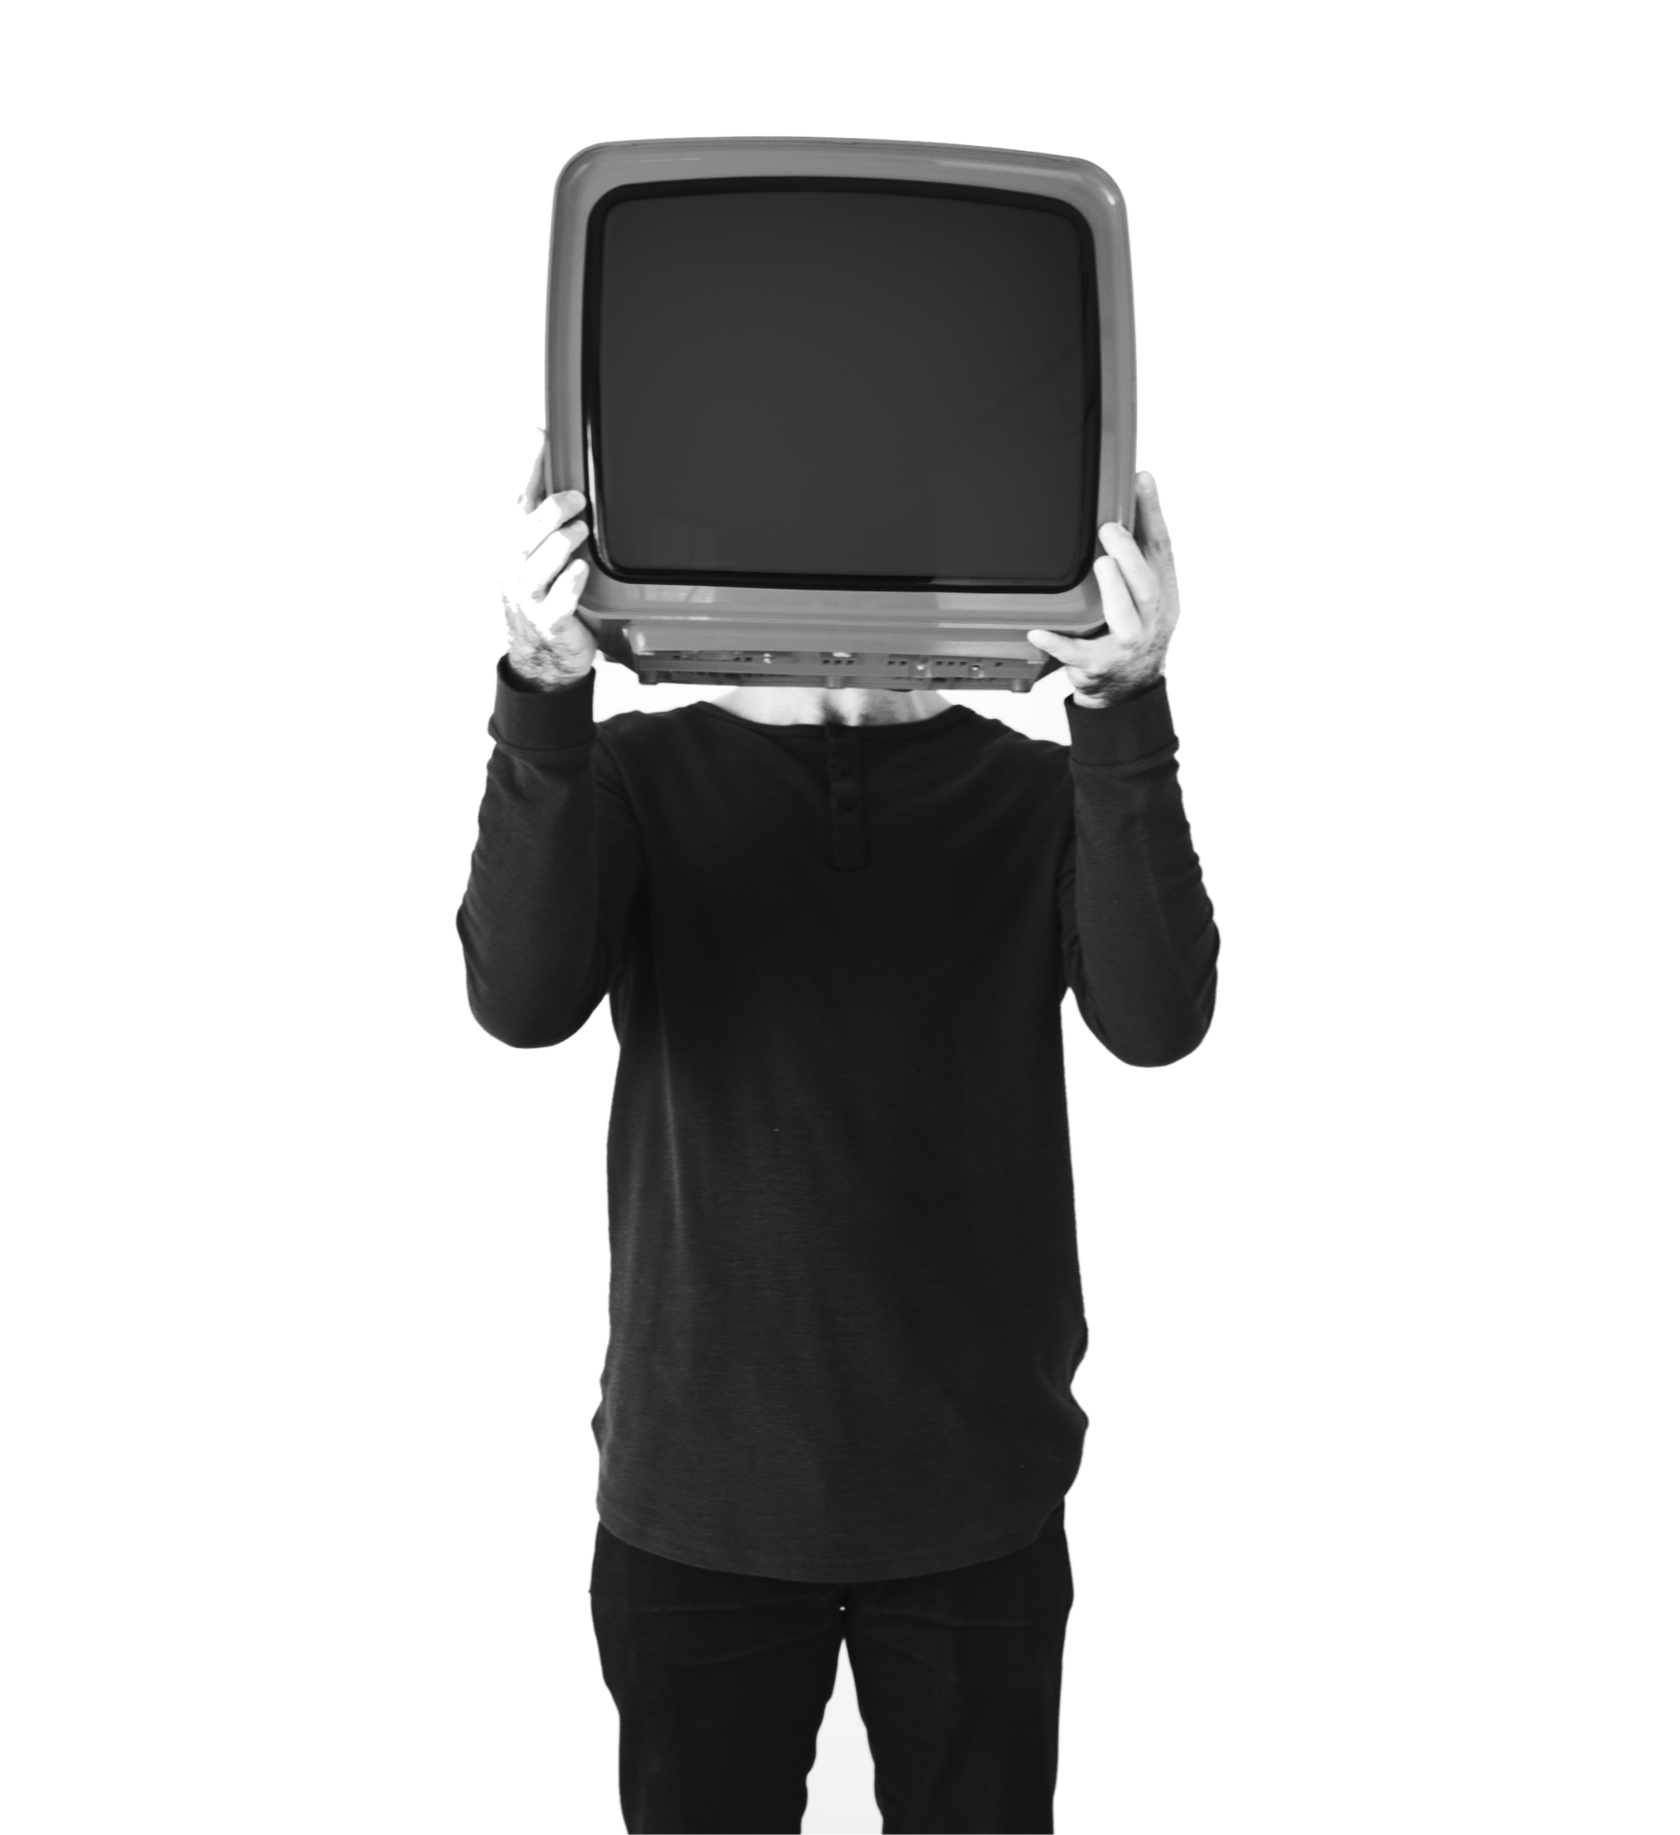 Tv man купить. Телевизор вместо головы. Человек телевизор. Человек держит телевизор. Мужчина с телевизором в руках.